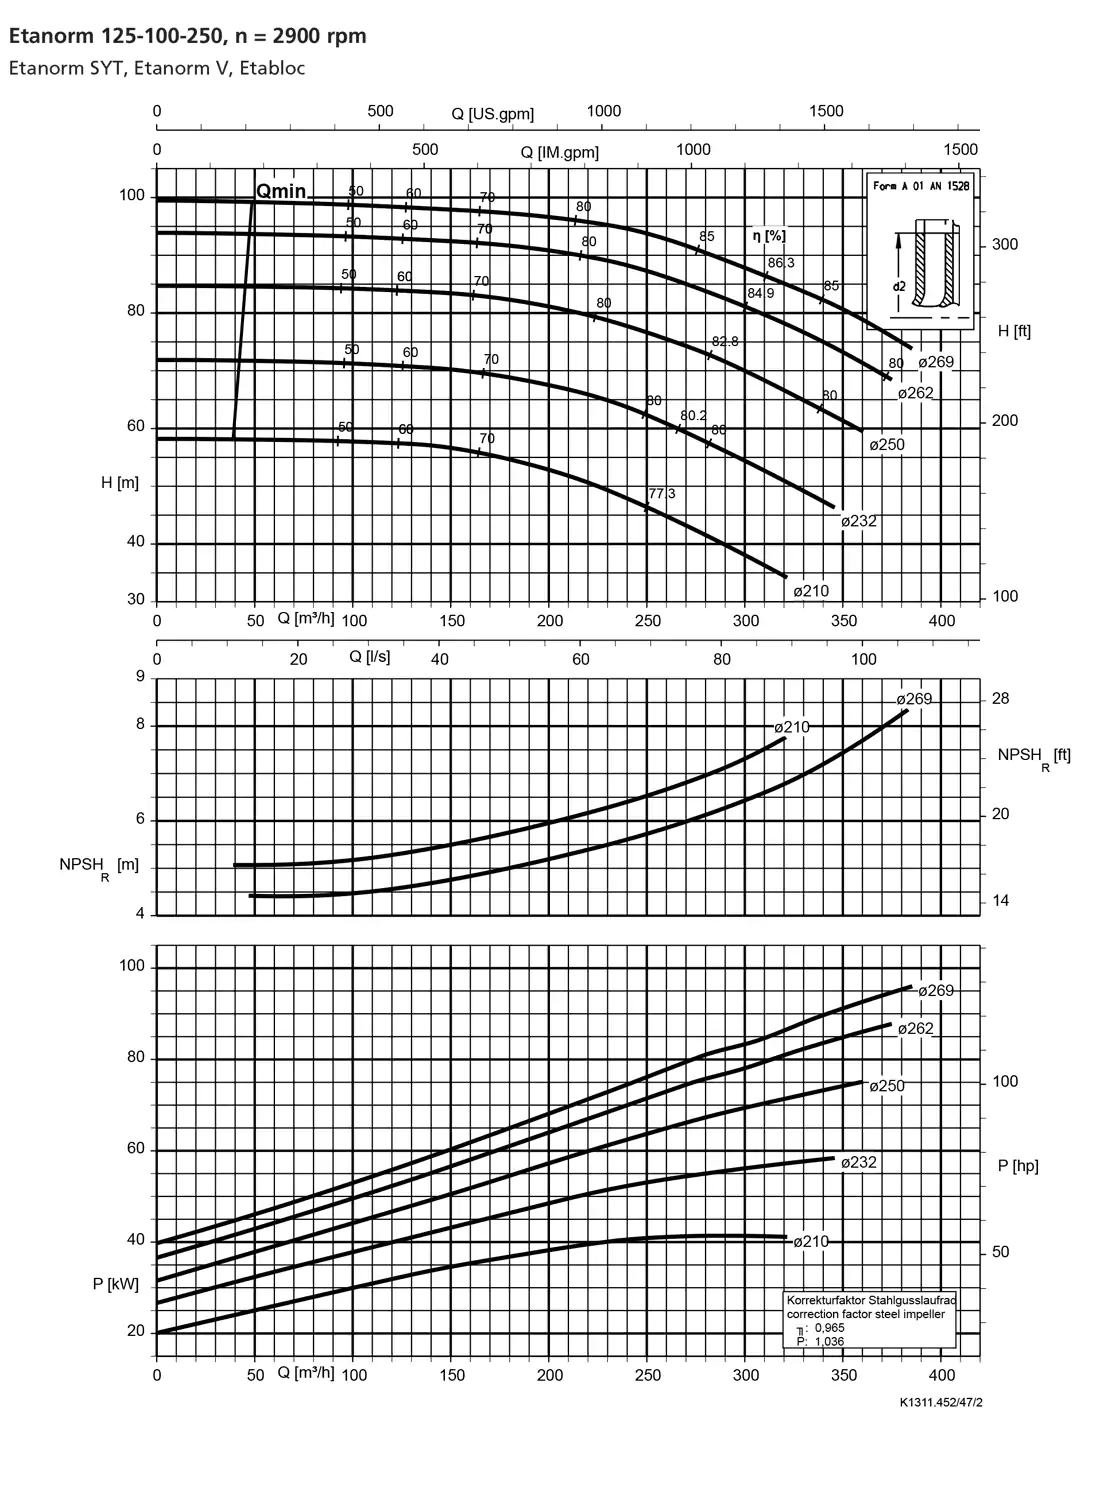 نمودار-کارکرد-پمپ-etanorm-syt-125-100-250-2900